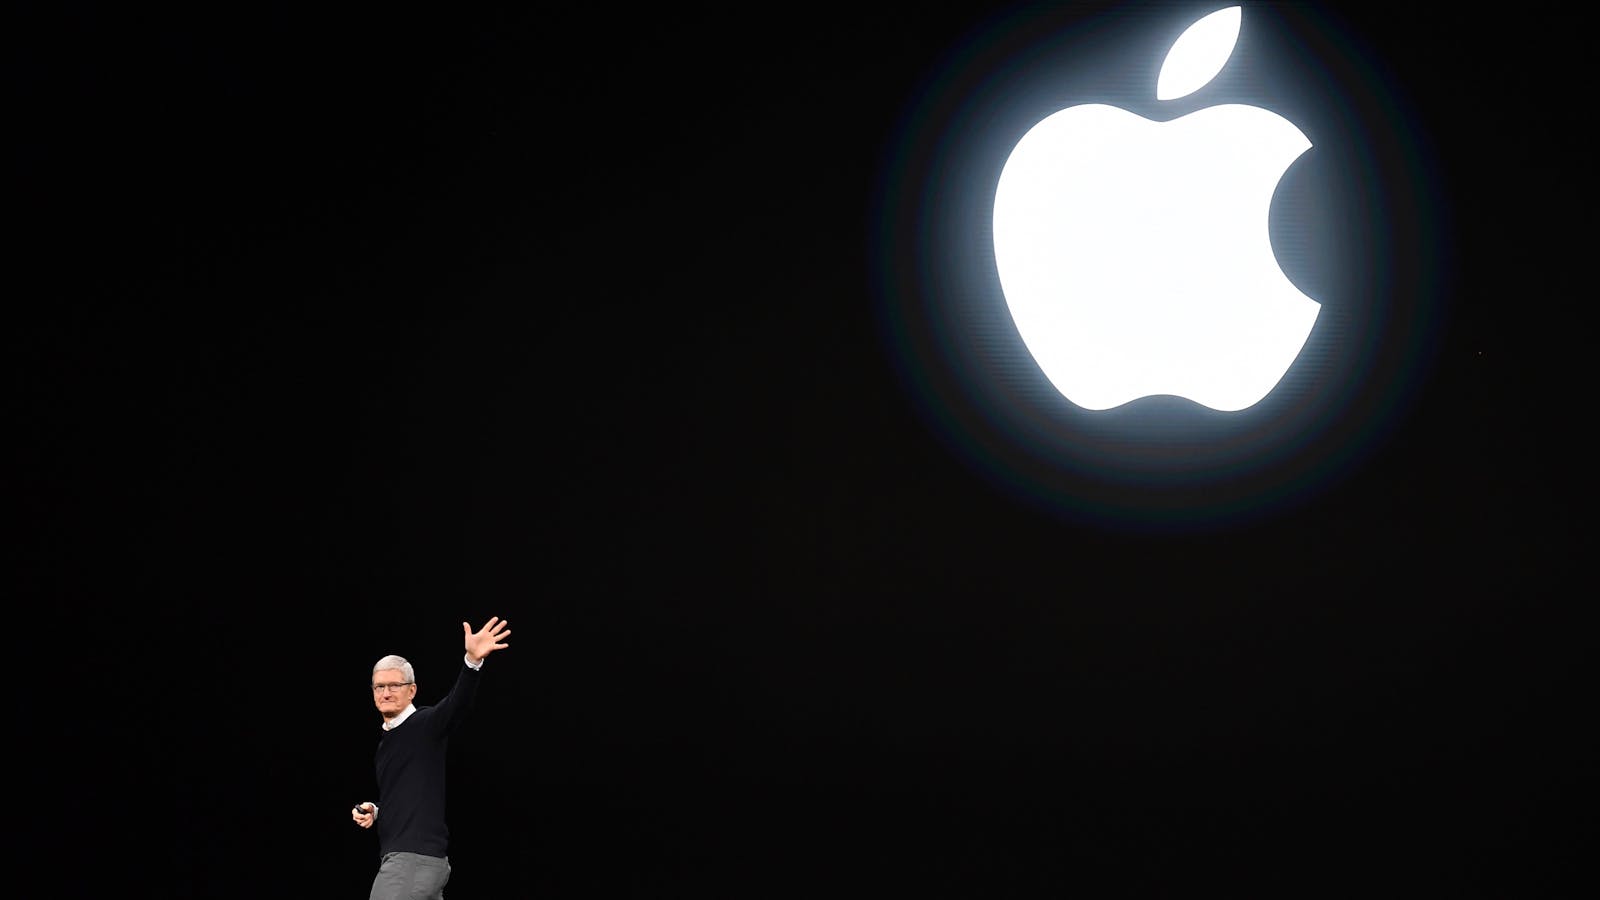 Виртуальная апл. Светящееся яблоко. Apple Inc. Макбук светящееся яблоко. MACBOOK со светящимся яблоком.